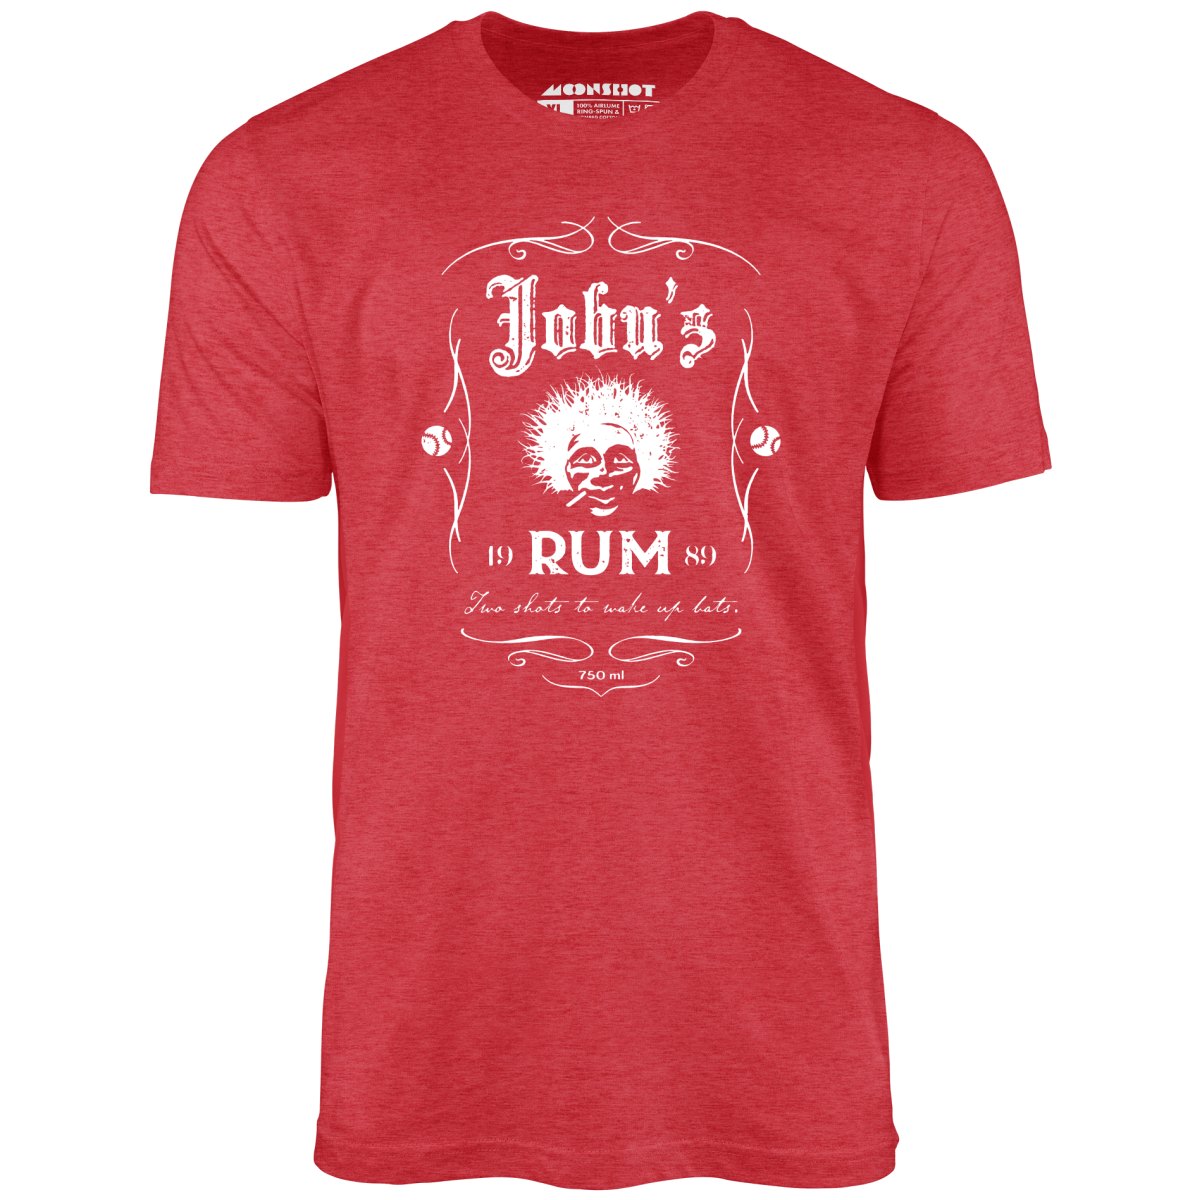 Jobu's Rum - Unisex T-Shirt